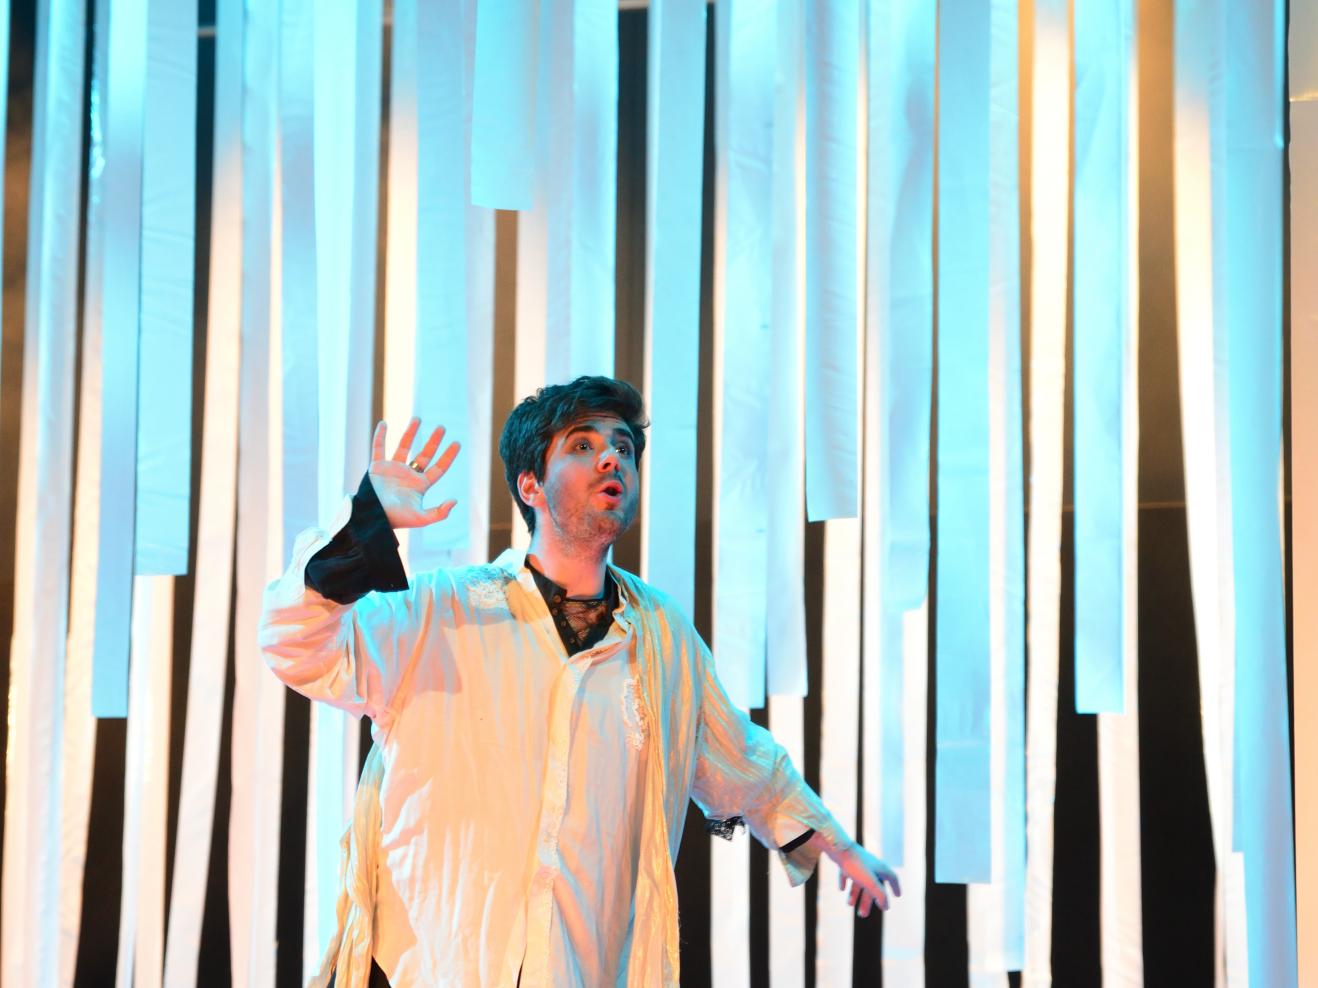 Sänger in einer Musiktheaterproduktion umgeben von blauem Licht